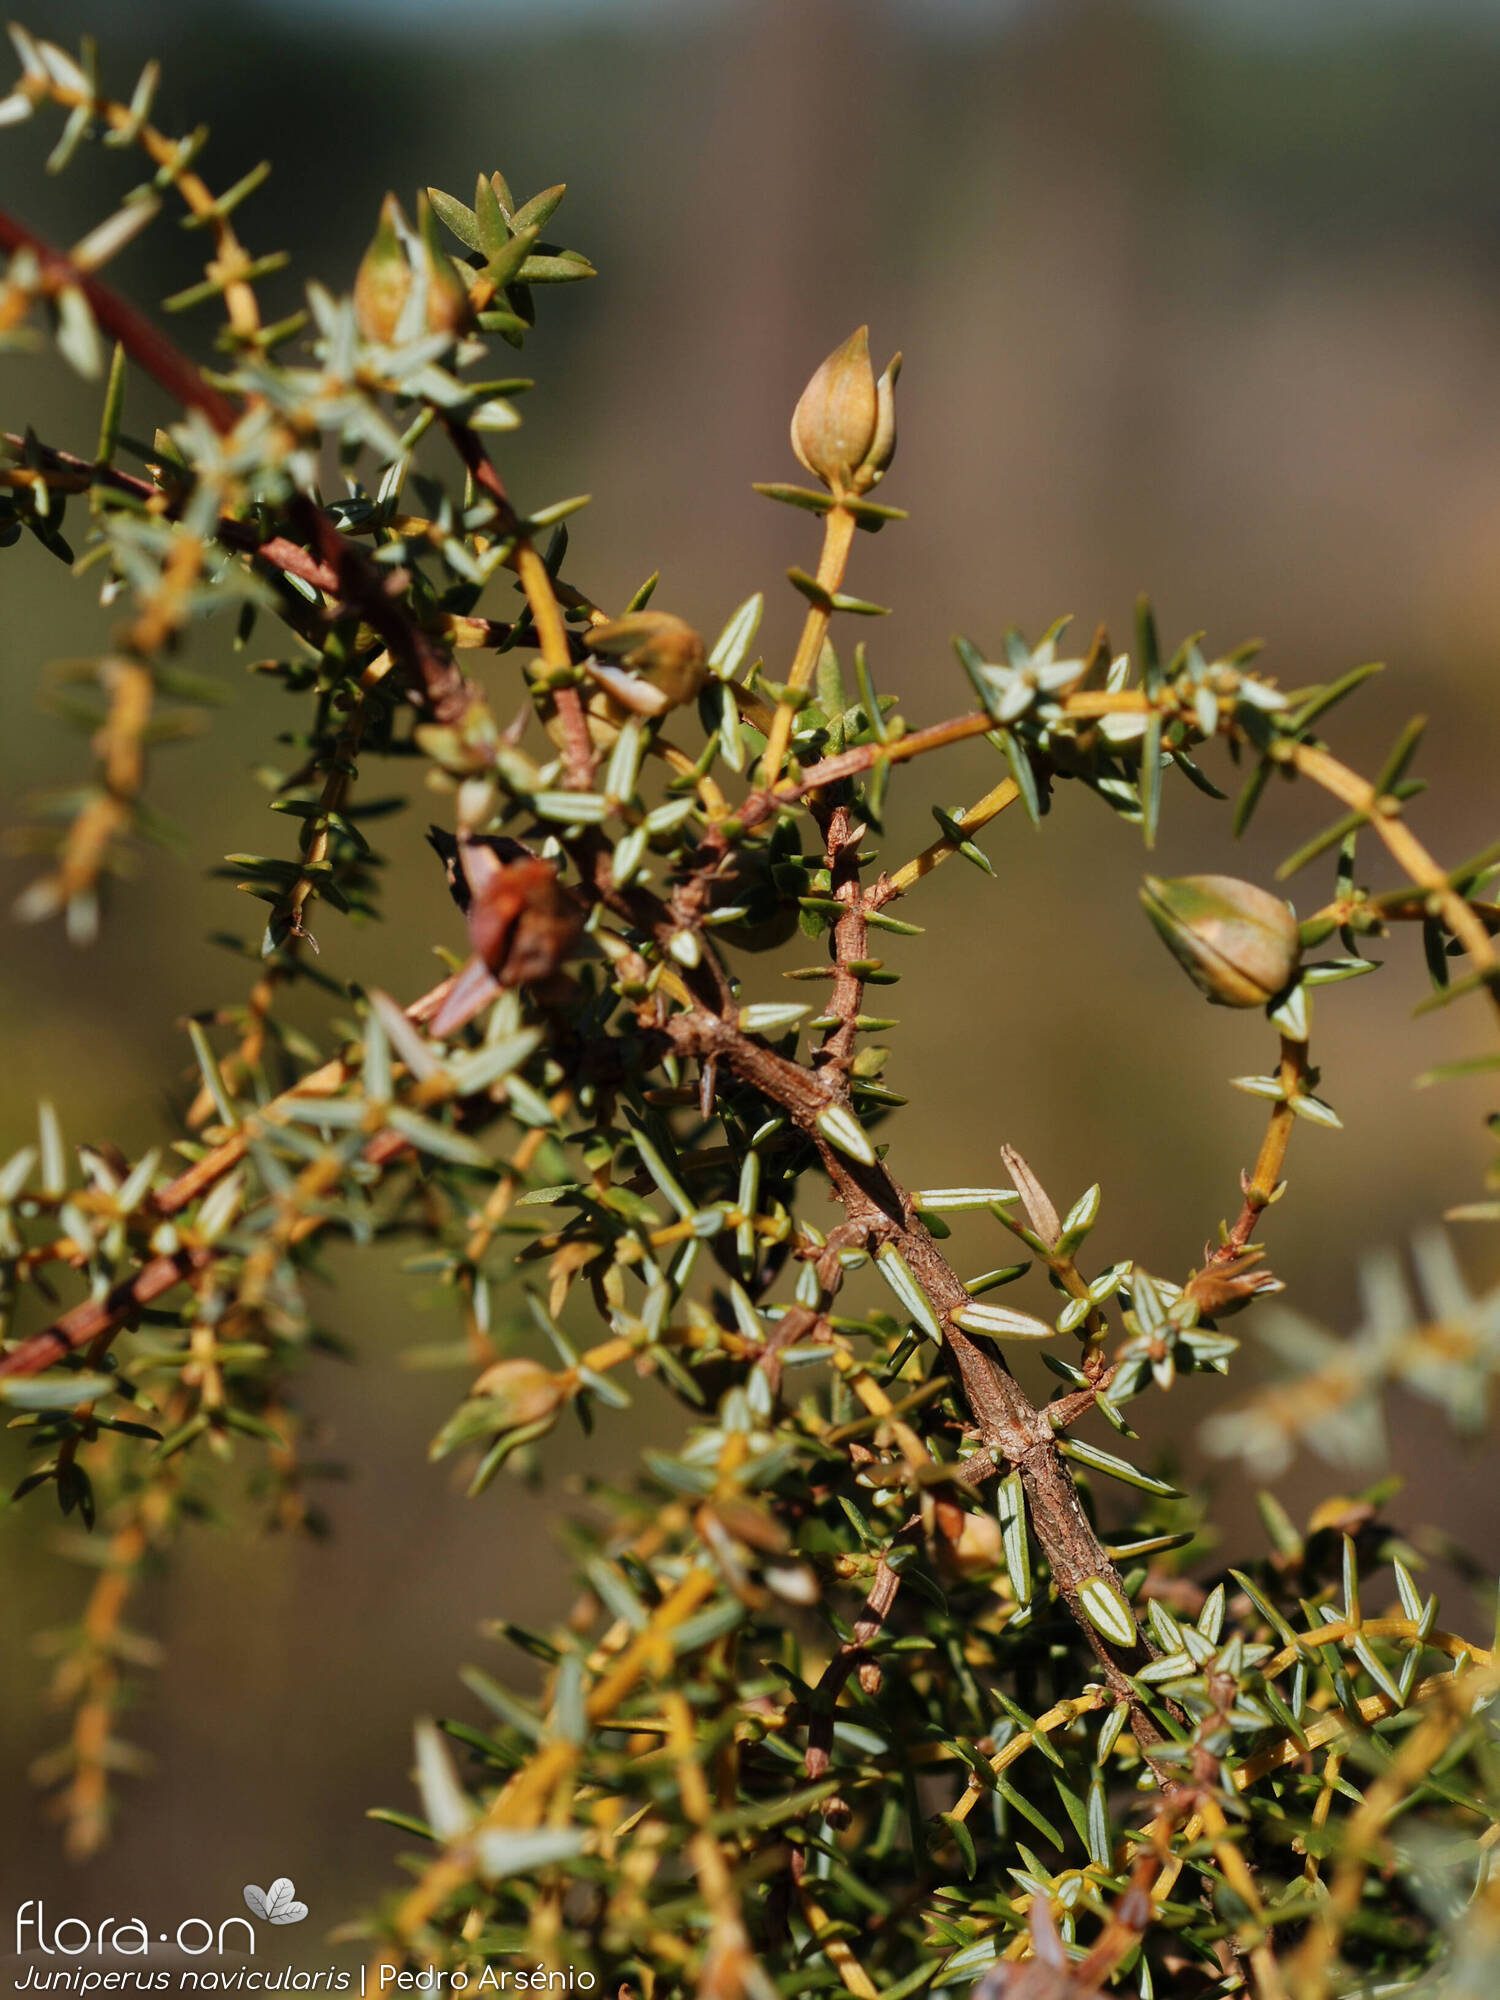 Juniperus navicularis - Ramo | Pedro Arsénio; CC BY-NC 4.0